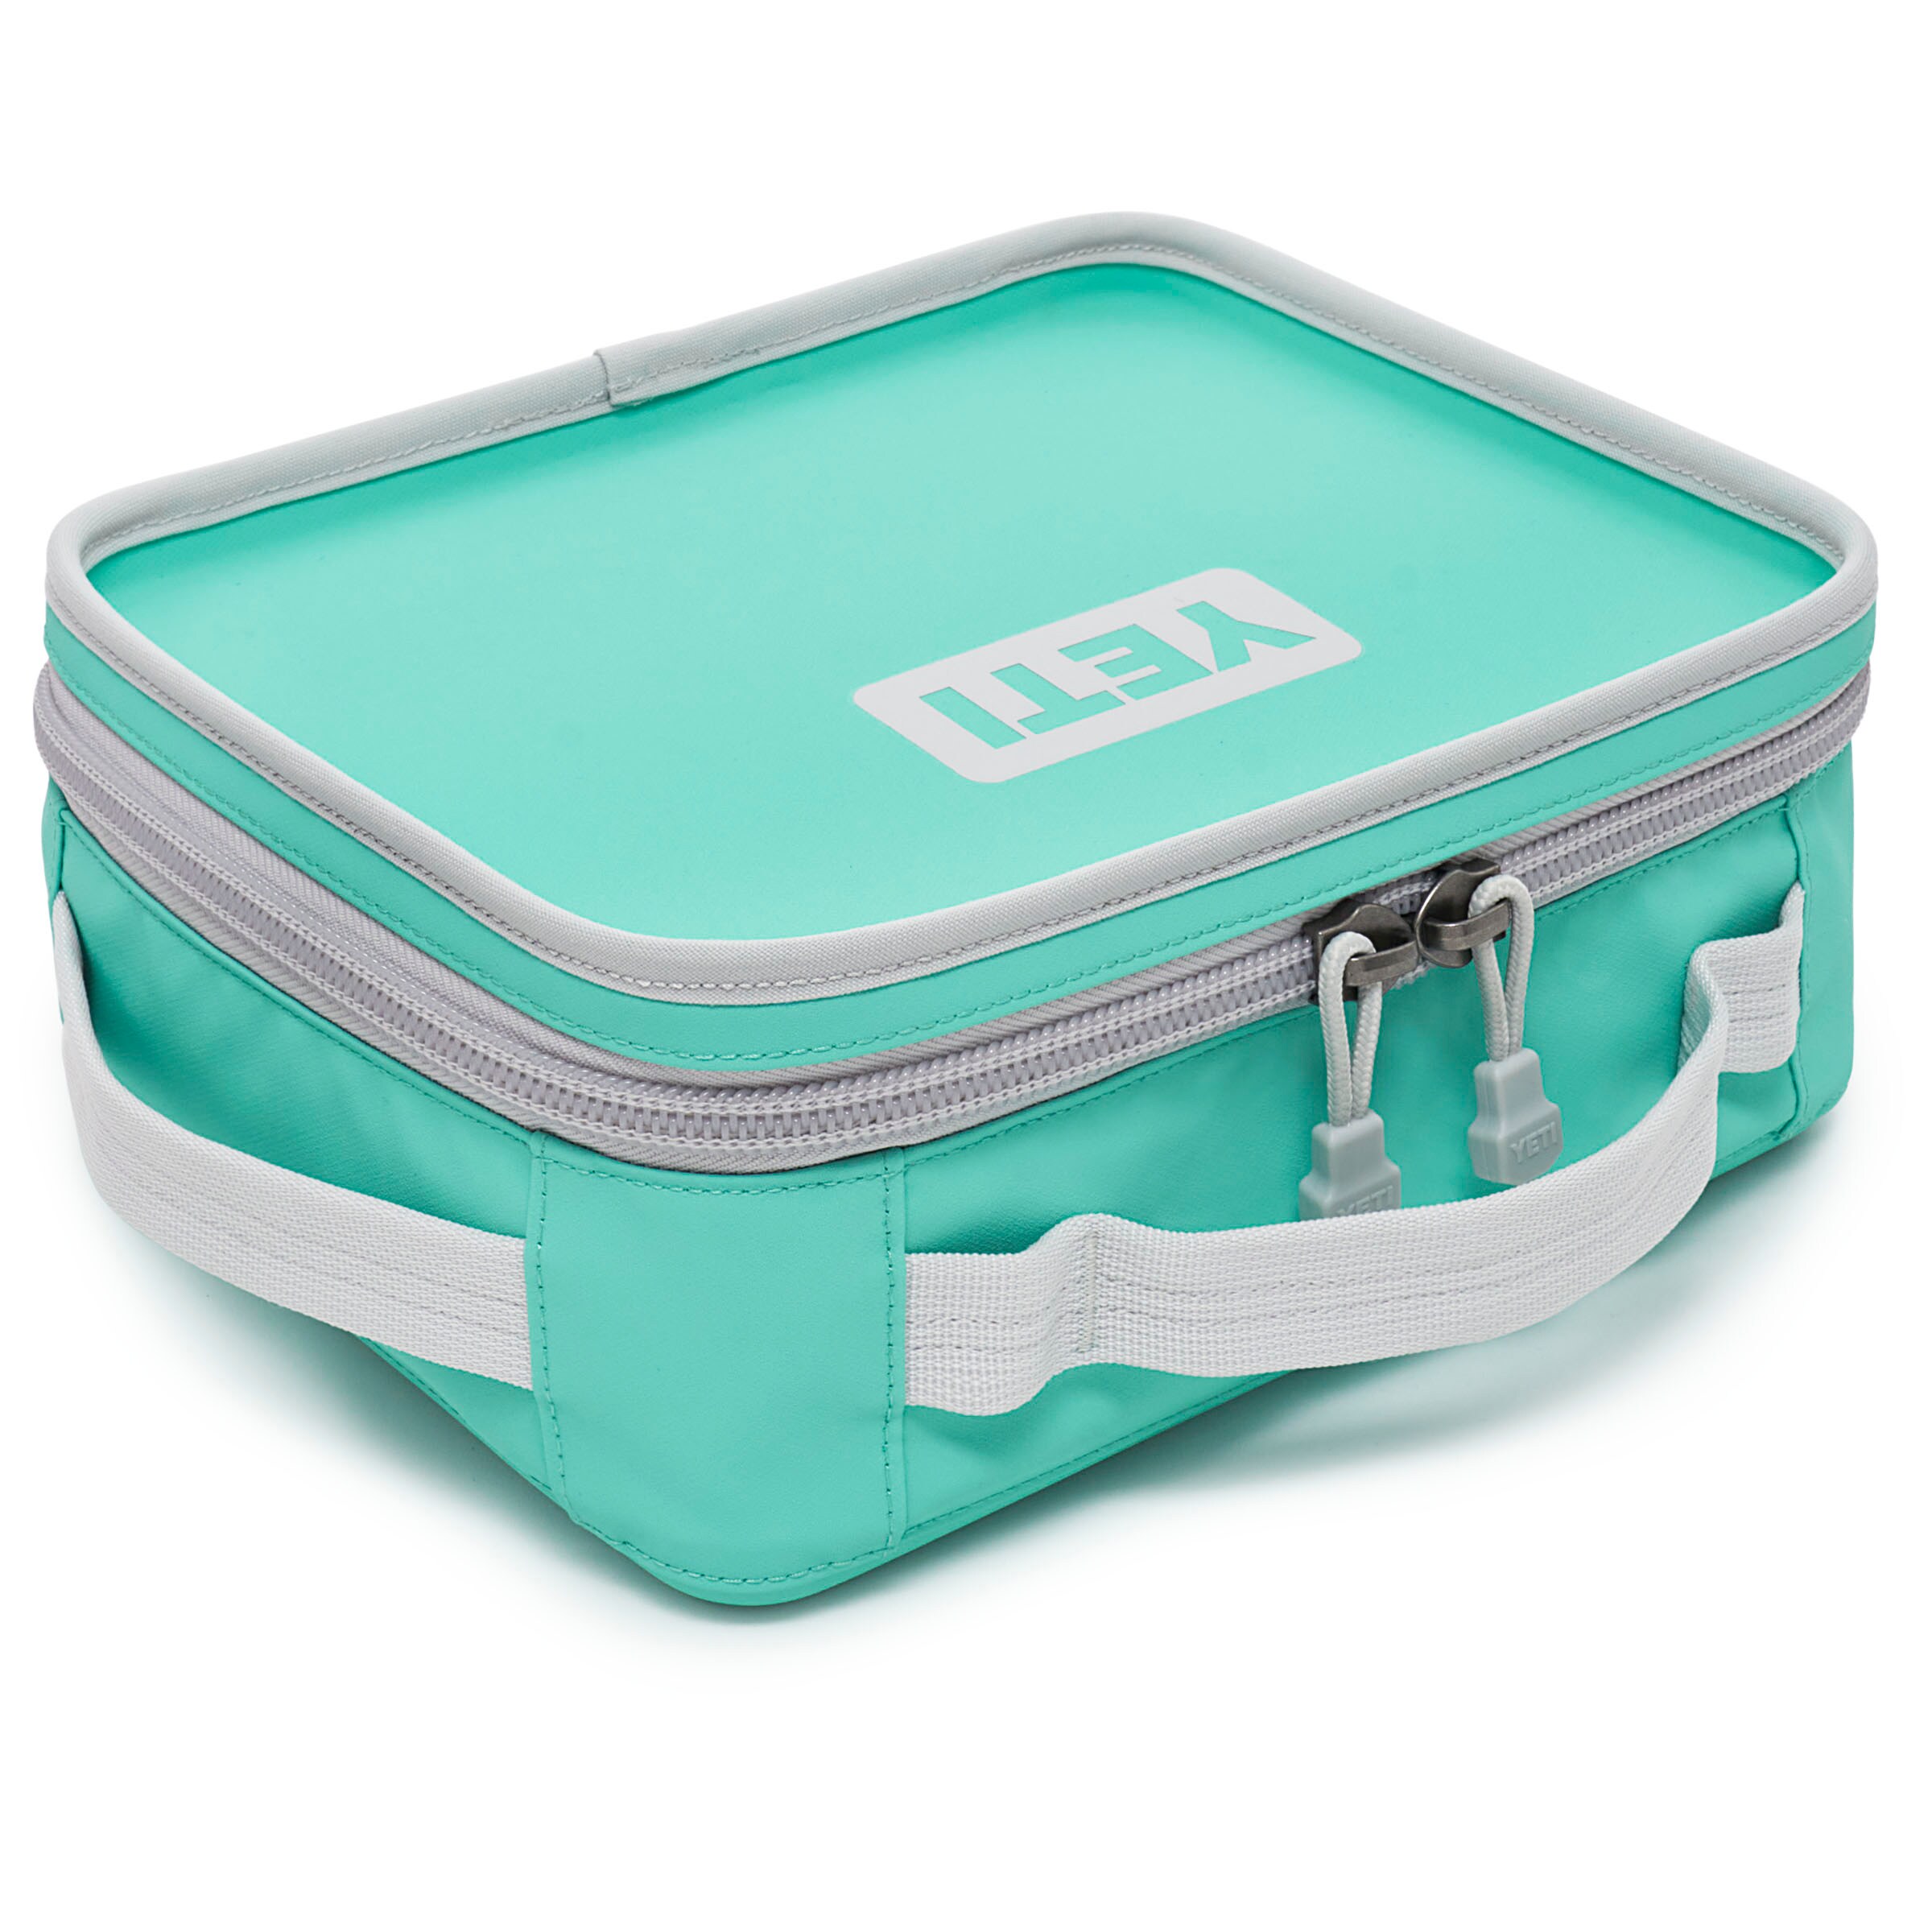 YETI Daytrip Lunch Box - Aquifer Blue